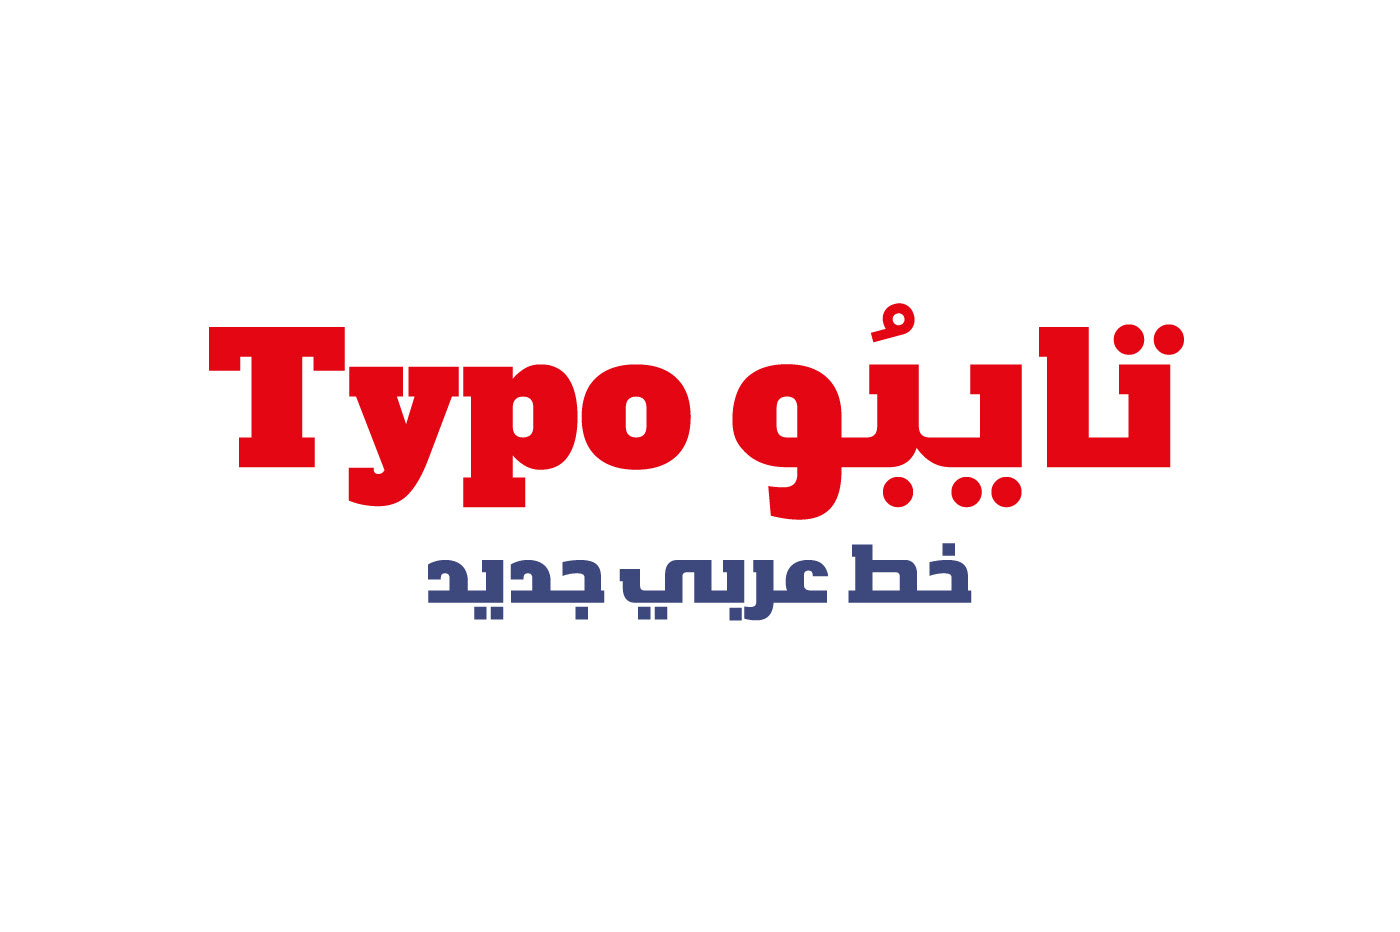 خط تايبو Typo Font on Behance